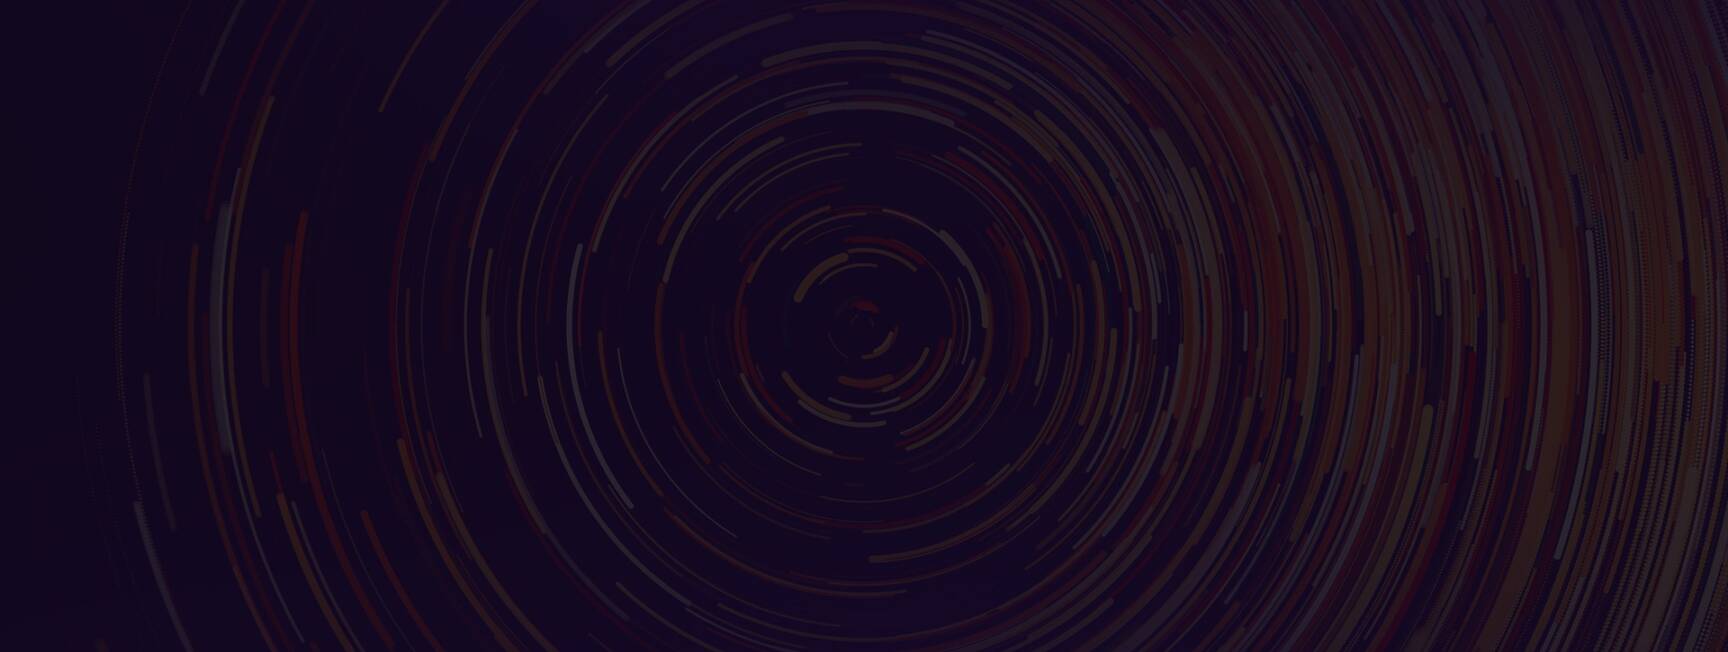 A dark background with a spiral pattern